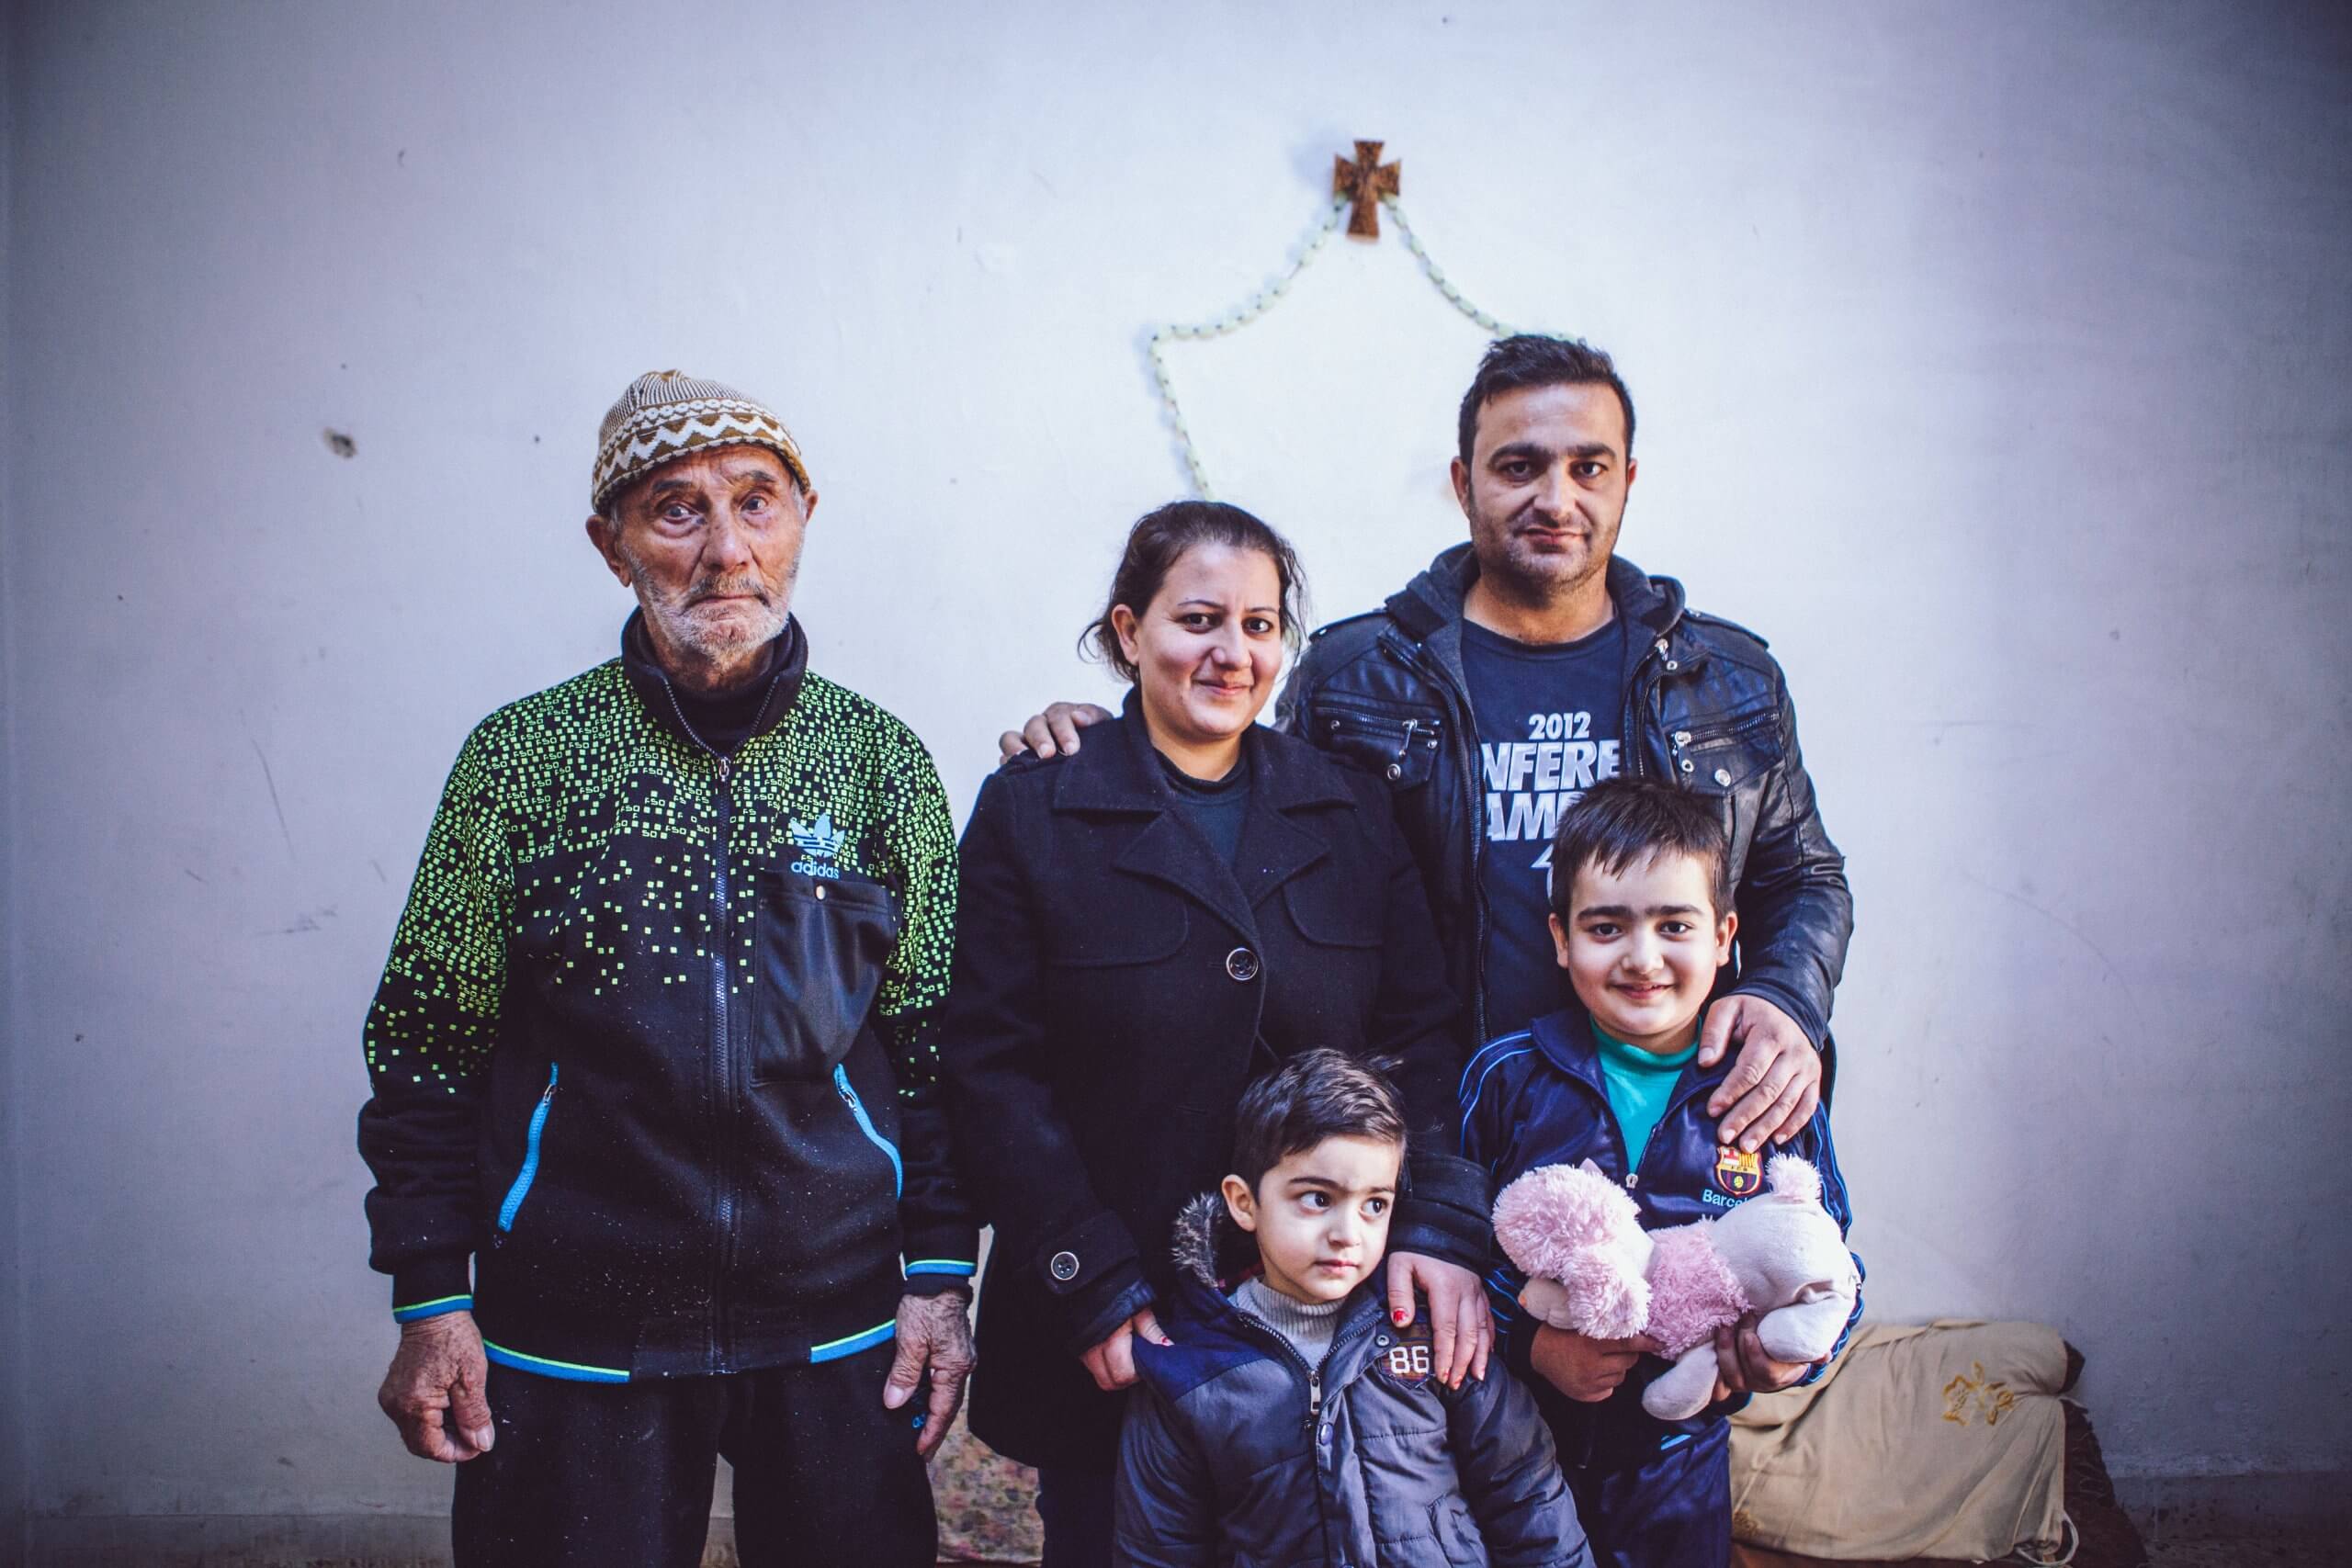 تأسيس بعثة الجمعية الدائمة في العاصمة الأردنية عمّان بُغية تقديم المساعدة إلى 12,300 لاجئ مسيحي عراقي في الأردن.